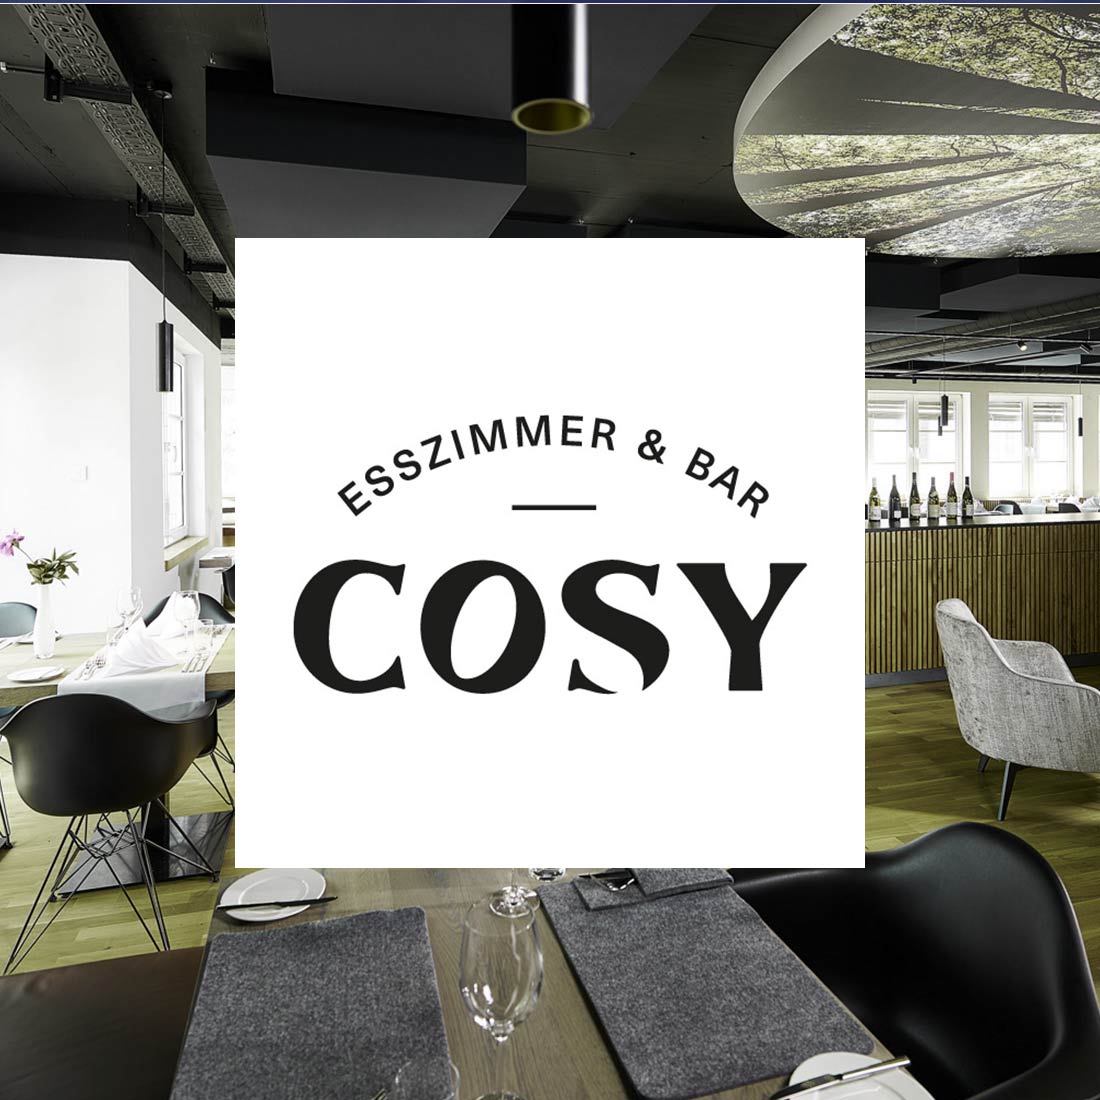 Cosy Esszimmer und Bar in Laichingen auf Emma bringts